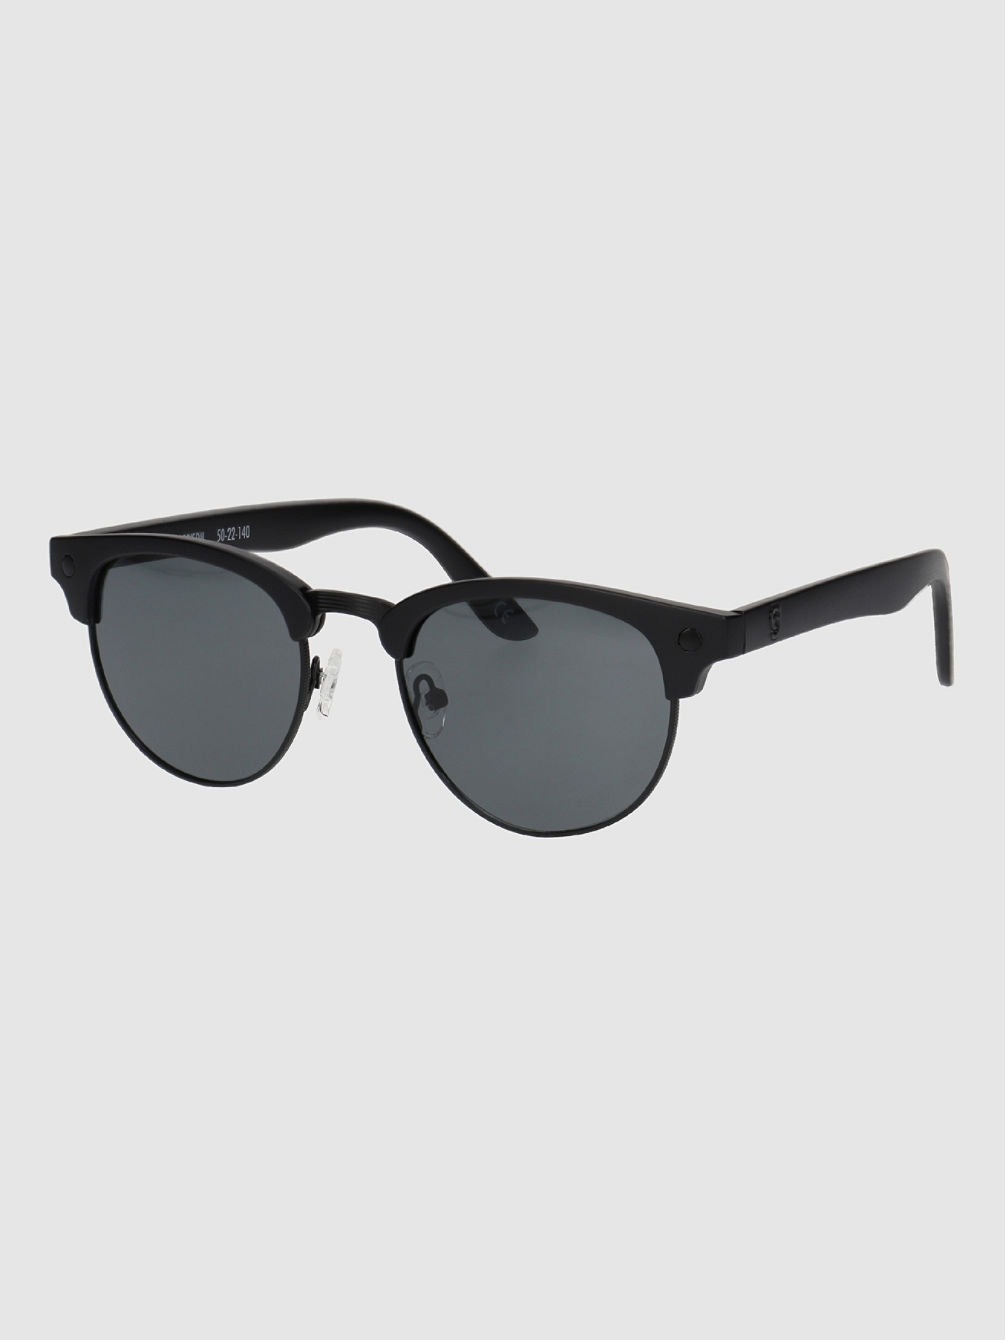 Morrison Premium Polarized Matte Black Gafas de Sol